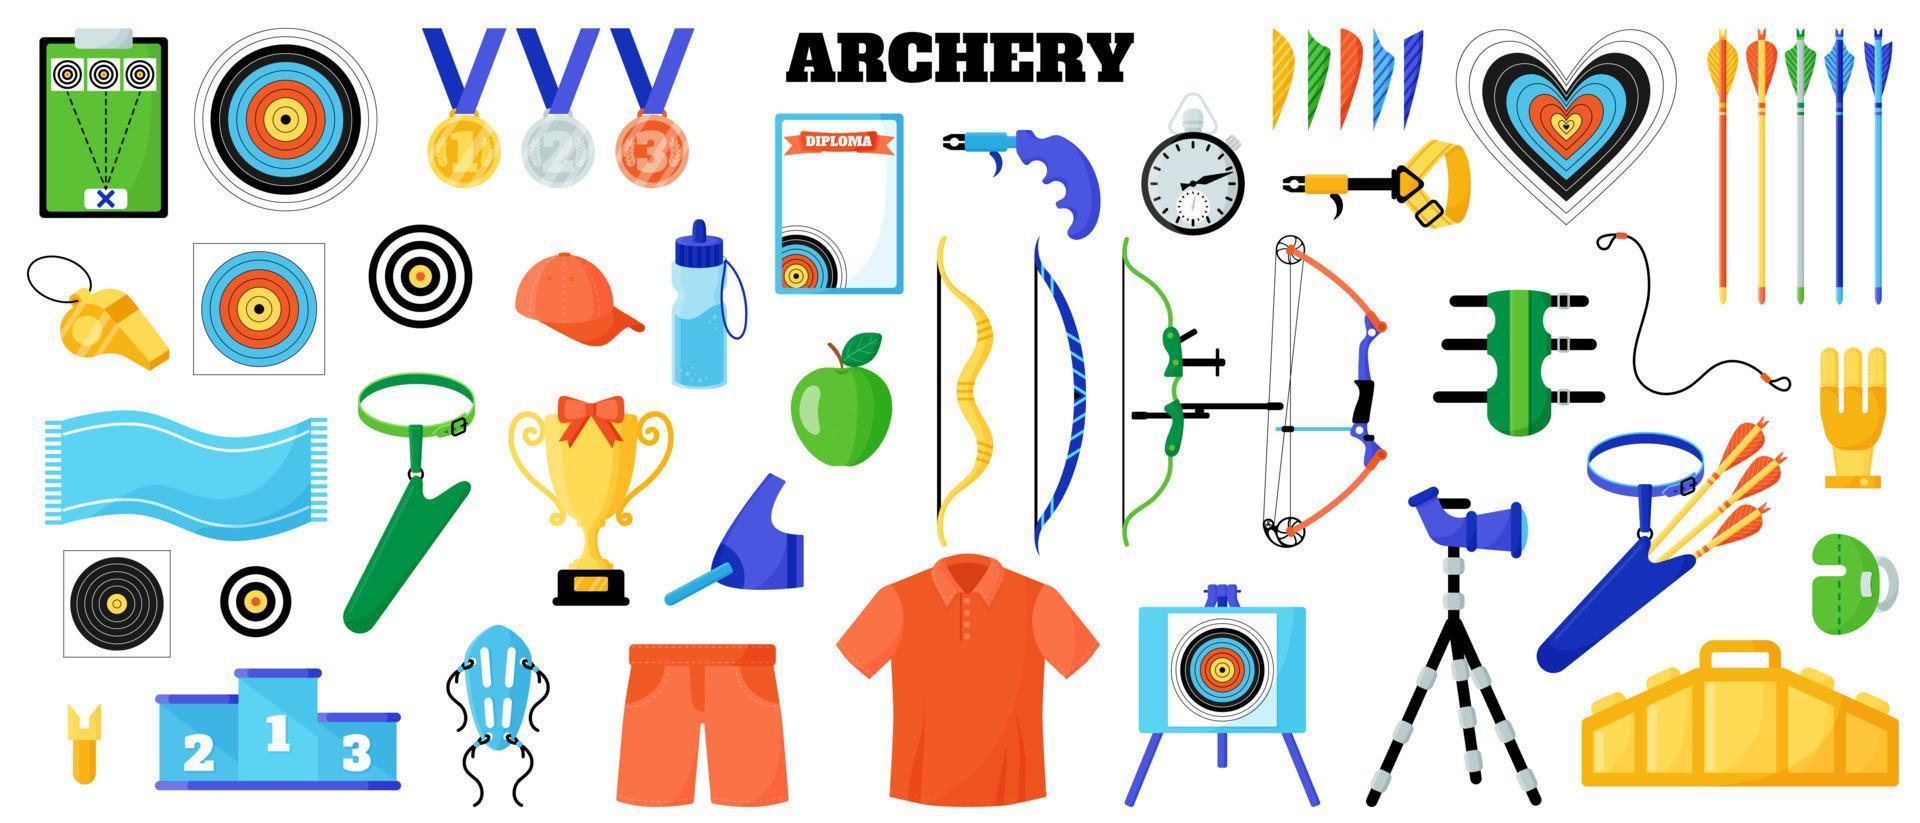 conjunto de equipamentos esportivos de tiro com arco. arco, flecha, alvo, corda, luva, cinto, proteção etc. jogos de verão vetor